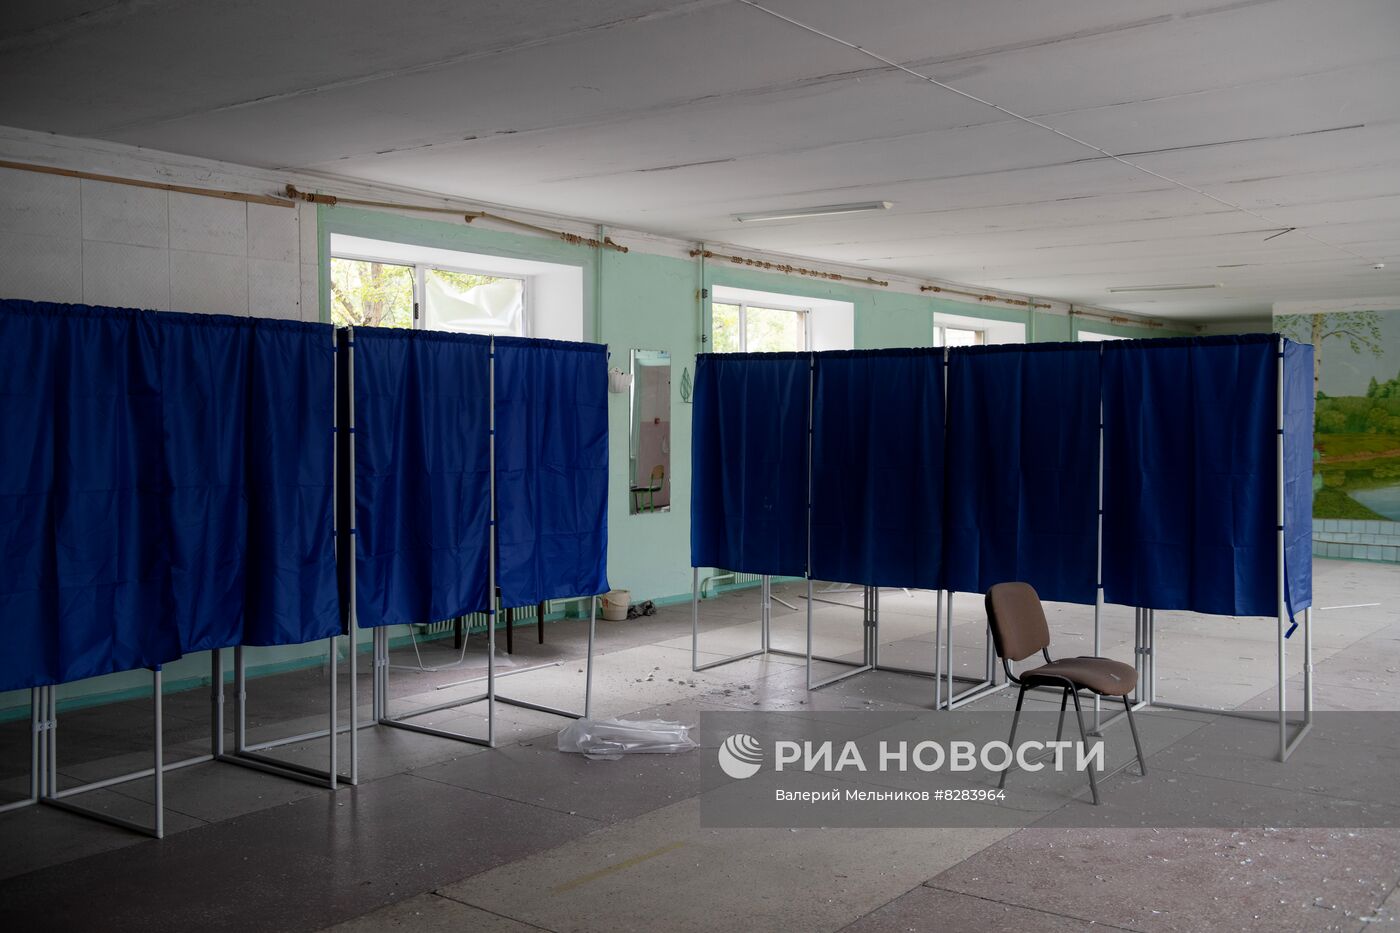 Последствия обстрела участка для голосования в ЛНР